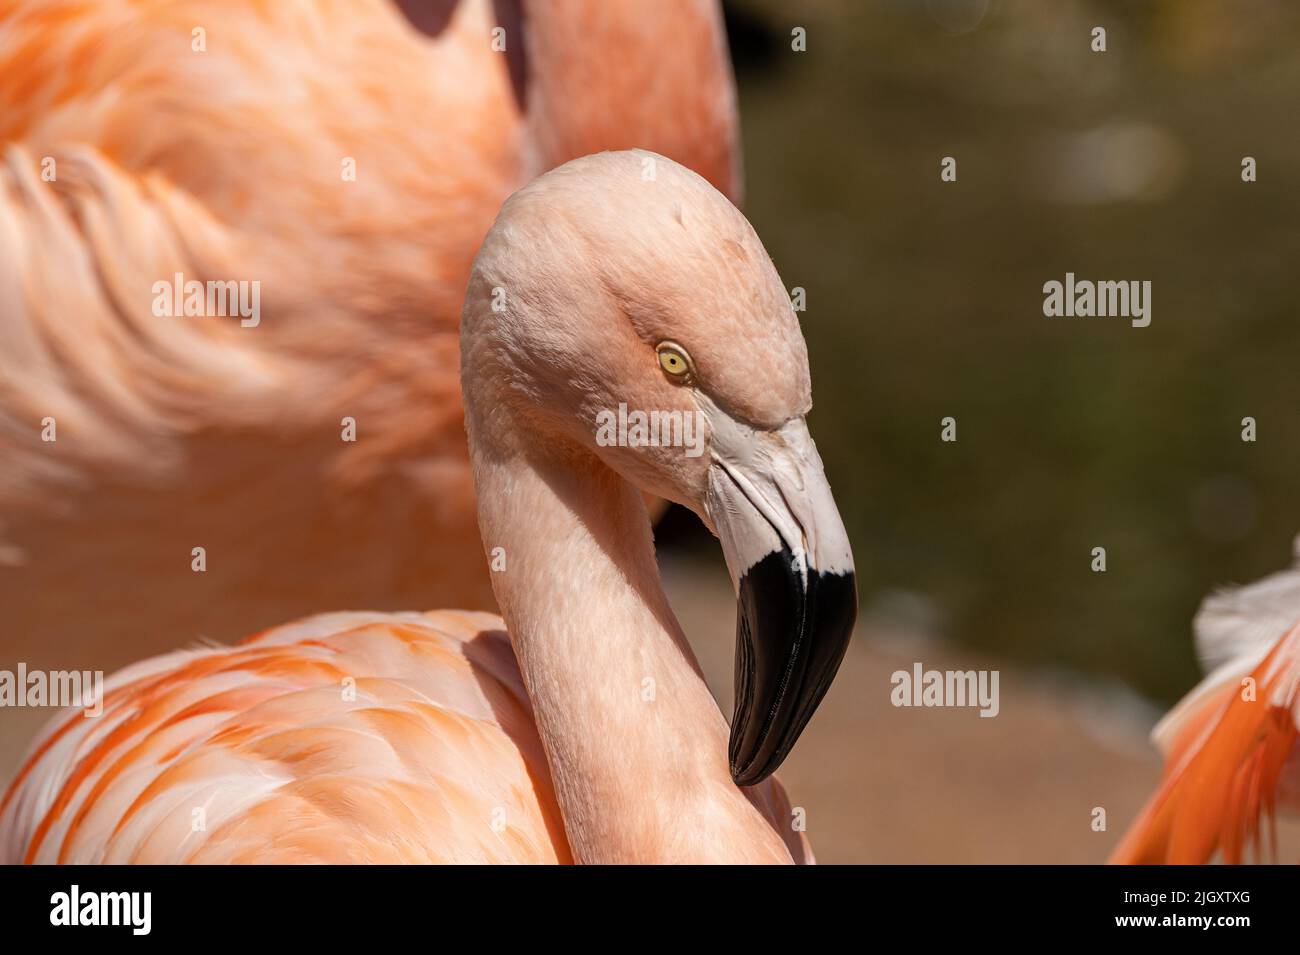 Un flamingo cileno prigioniero, Fenicotterus chilensis al Jersey zoo. Un grande fenicottero nativo del Sud America. Foto Stock